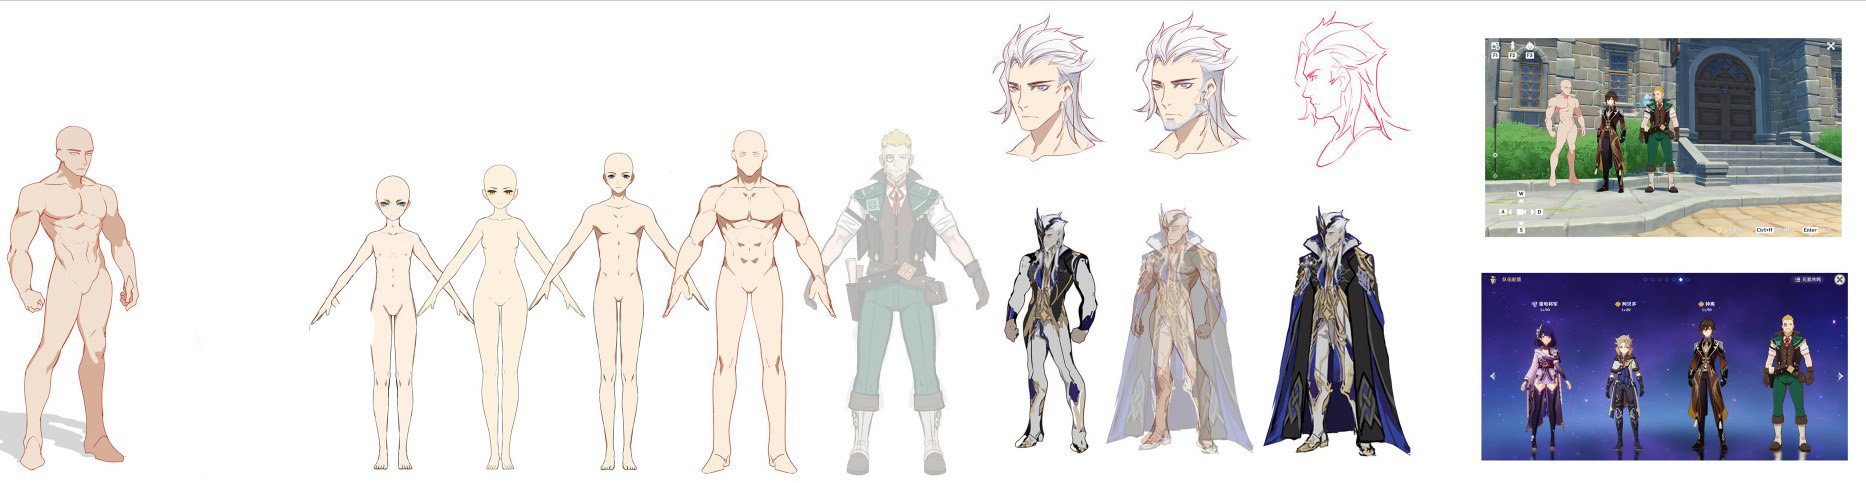 Novos modelos de personagens masculinos em Genshin Impact